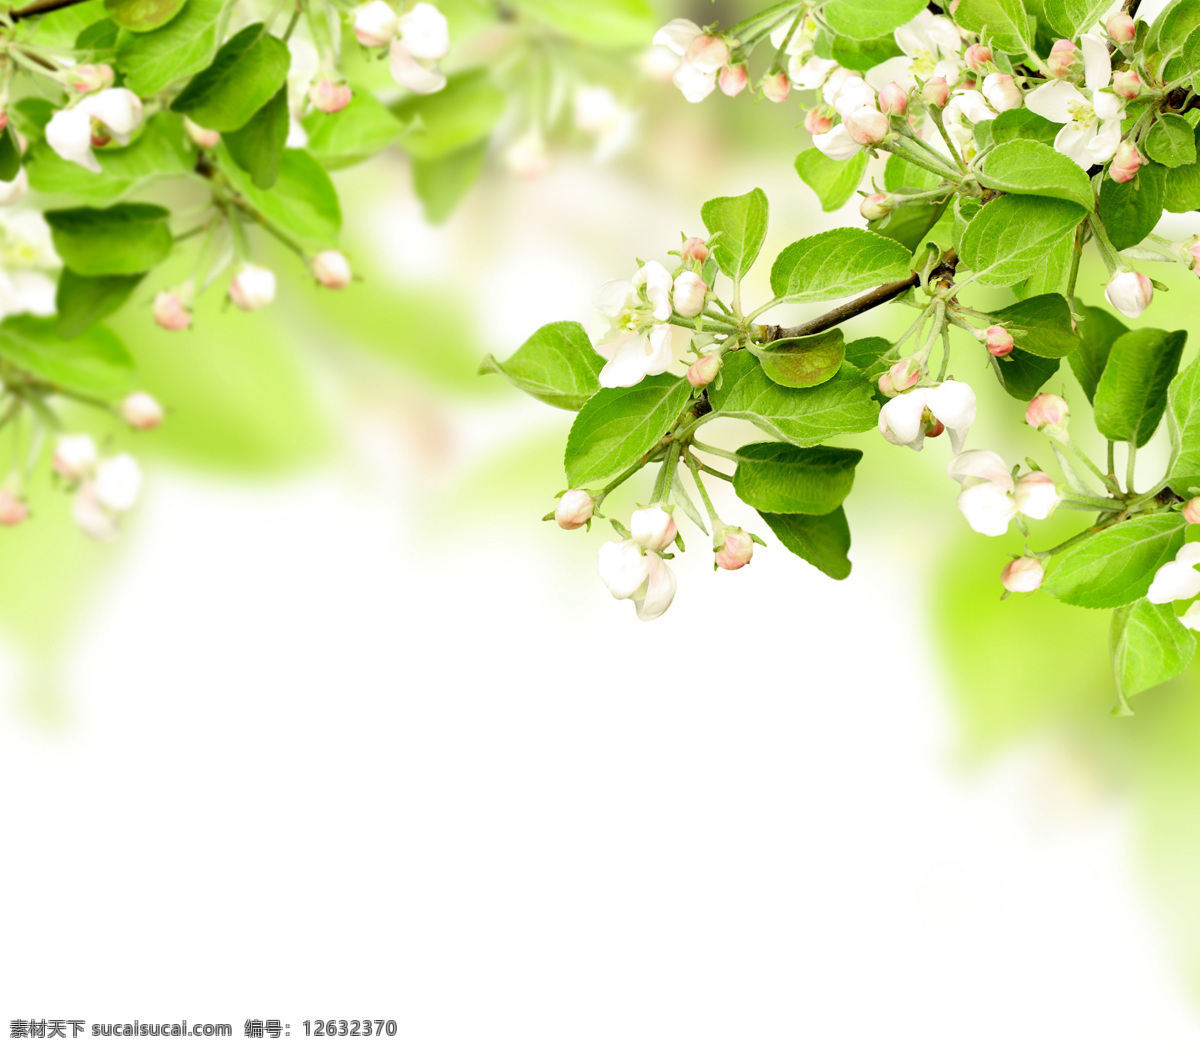 唯美 鲜花 背景 风景 季节 春天 春季 朦胧 光晕 花草树木 生物世界